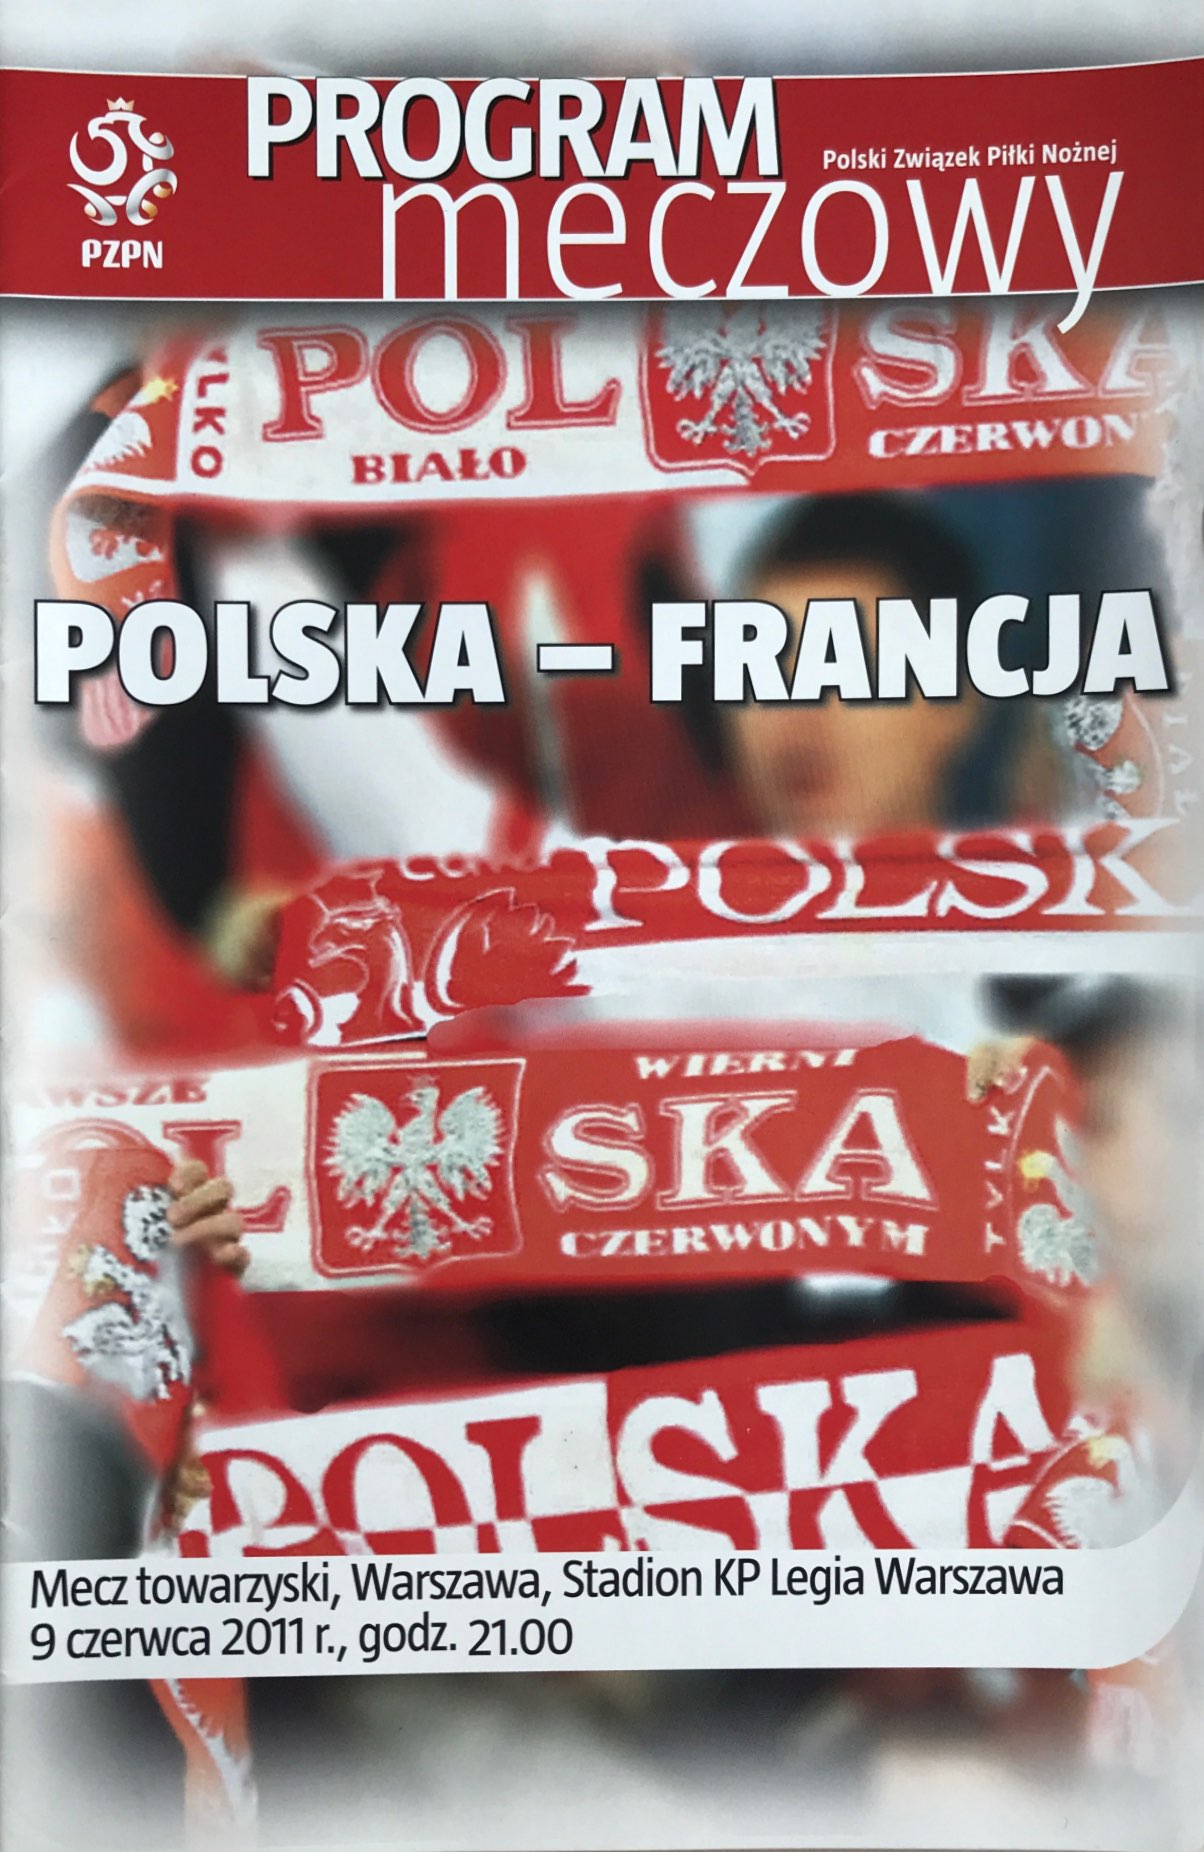 Program meczowy Polska - Francja 0:1 (09.06.2011).